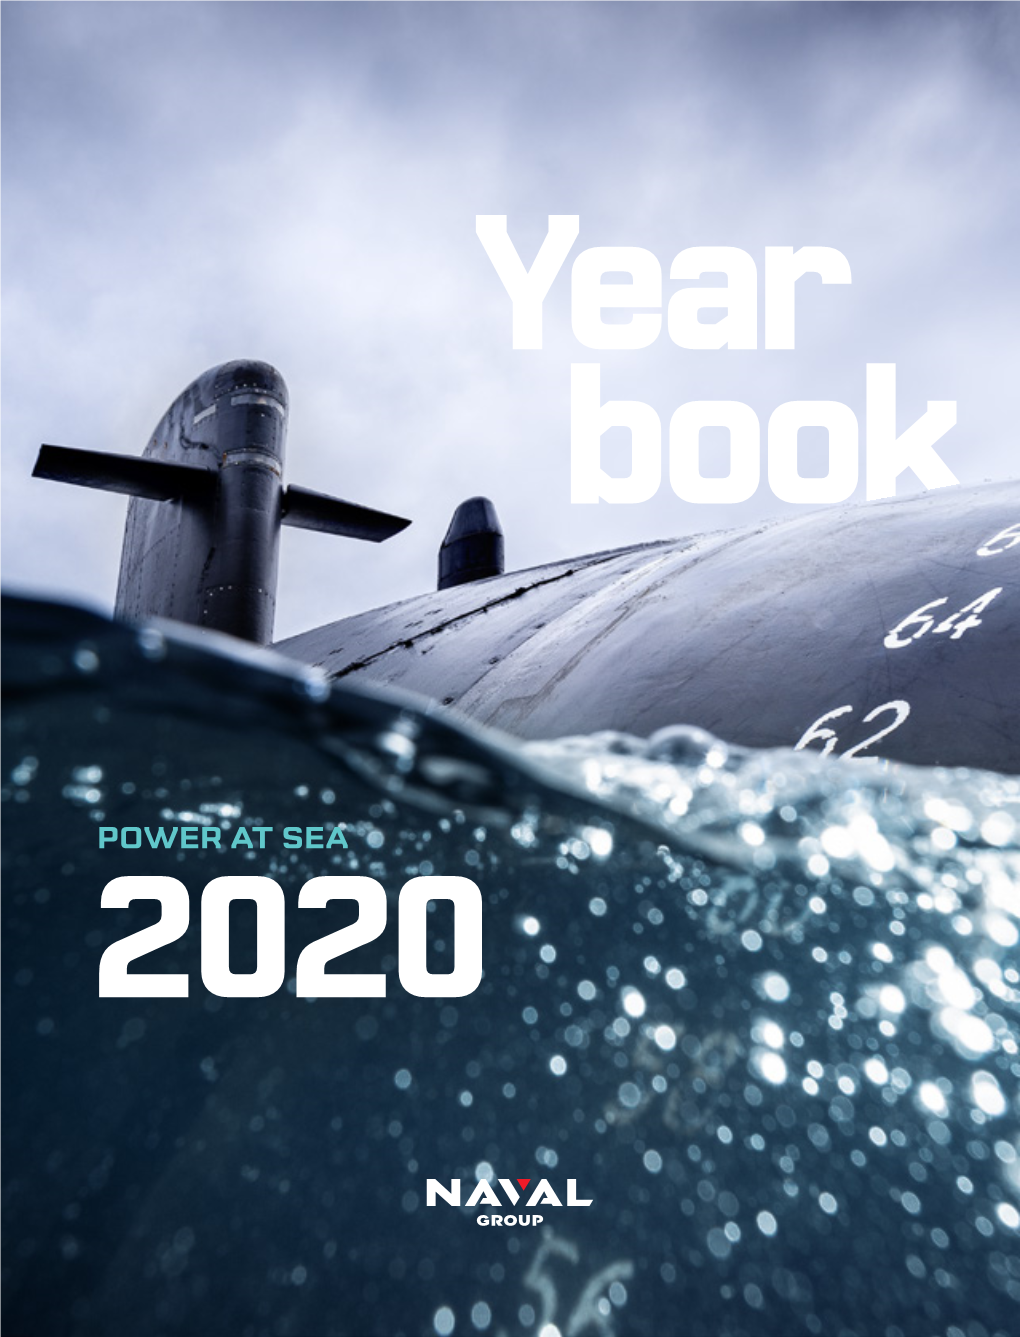 2020 Year Book